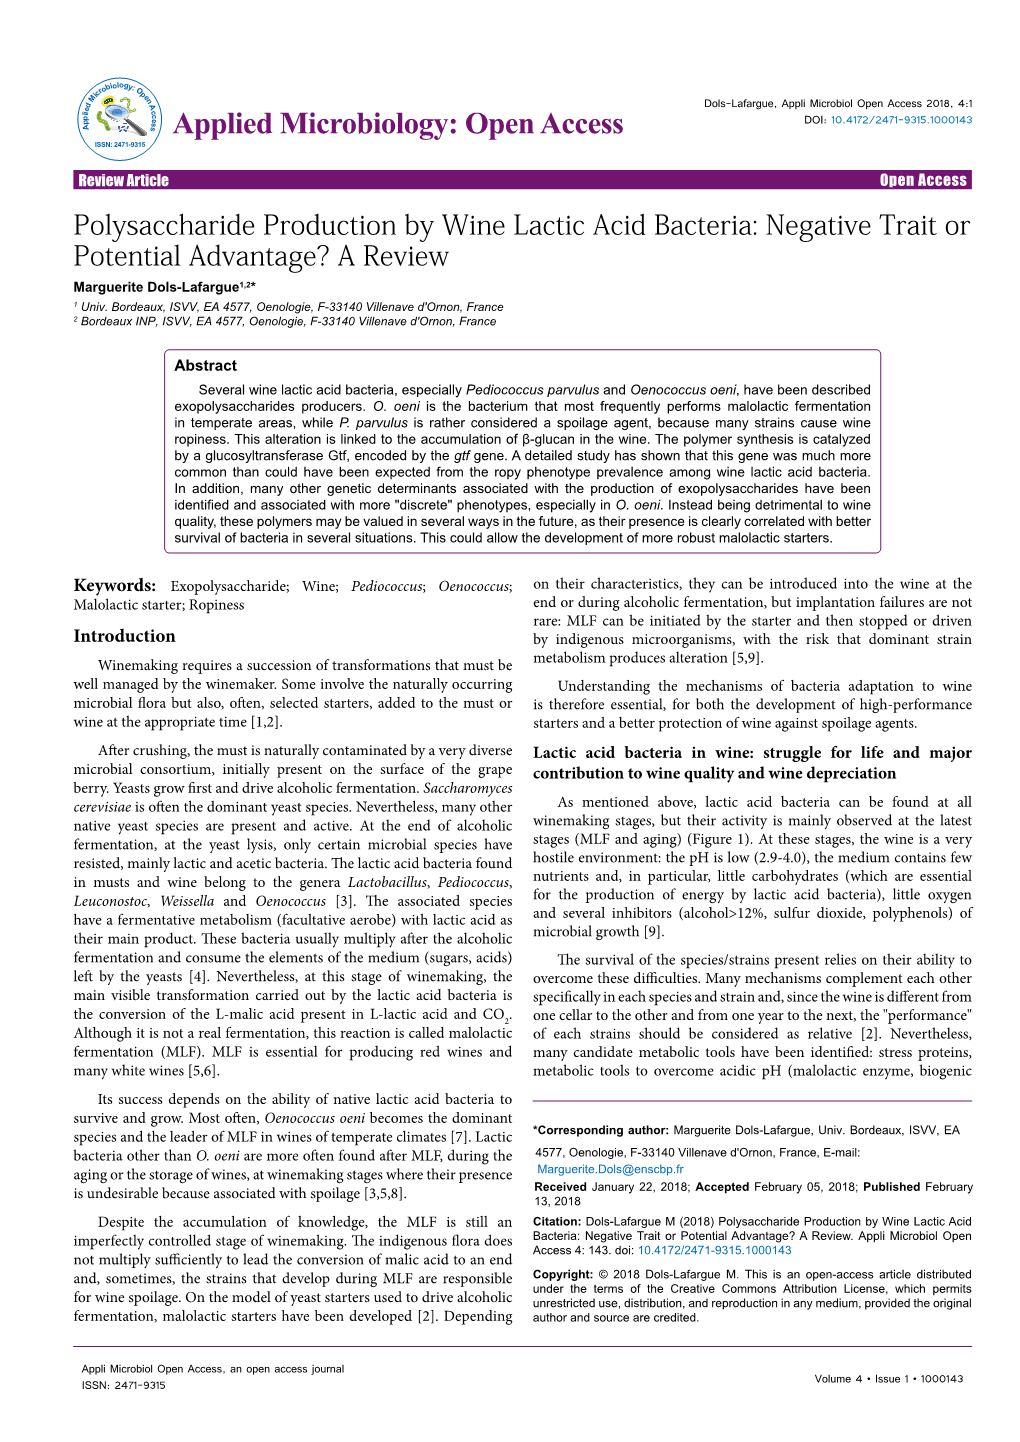 Polysaccharide Production by Wine Lactic Acid Bacteria: Negative Trait Or Potential Advantage? a Review Marguerite Dols-Lafargue1,2* 1 Univ